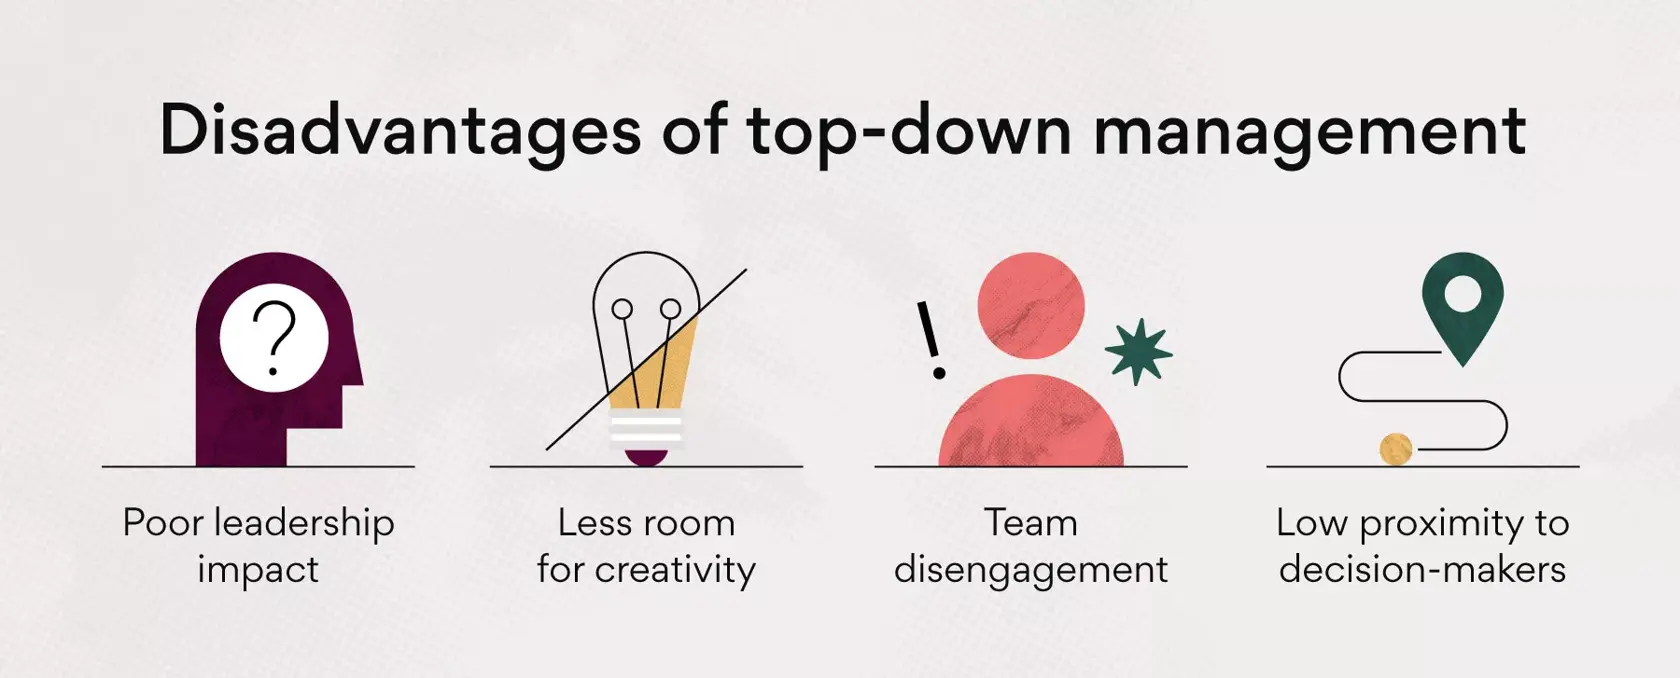 Svantaggi della gestione top-down